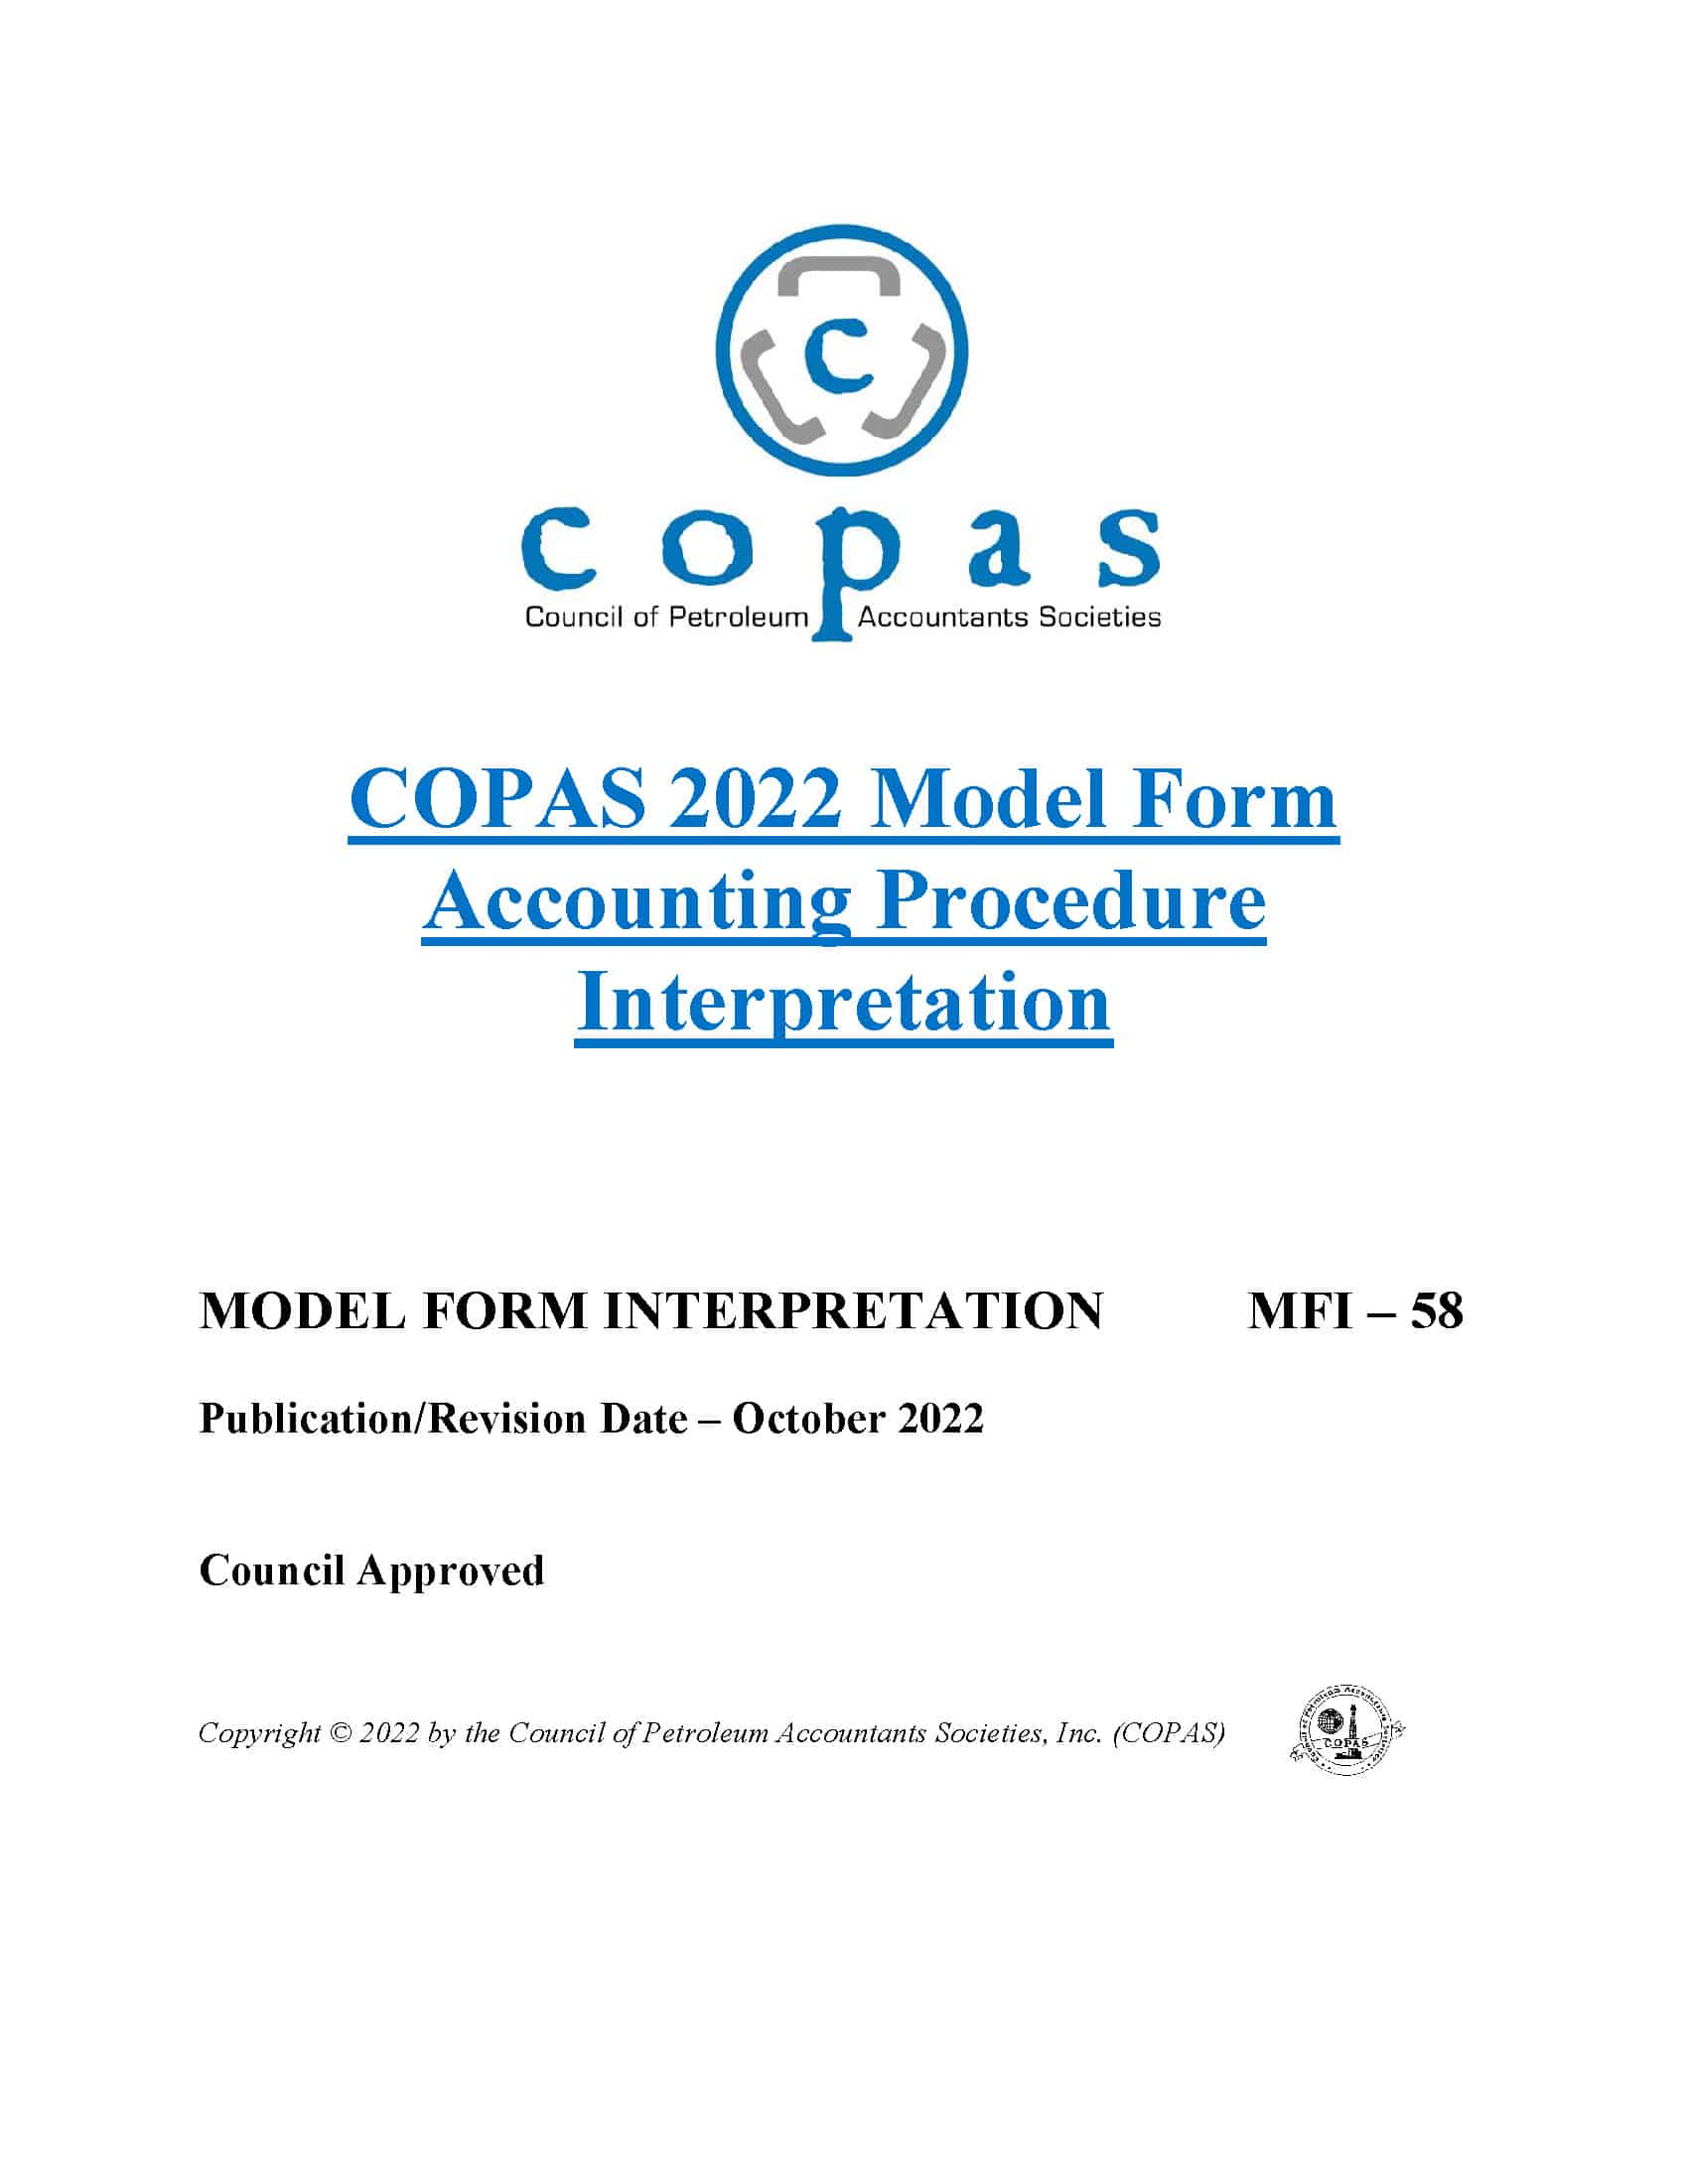 MFI-58 2022 Model Form Accounting Procedure Interpretation - MFI 58 Cover - Council of Petroleum Accountants Societies